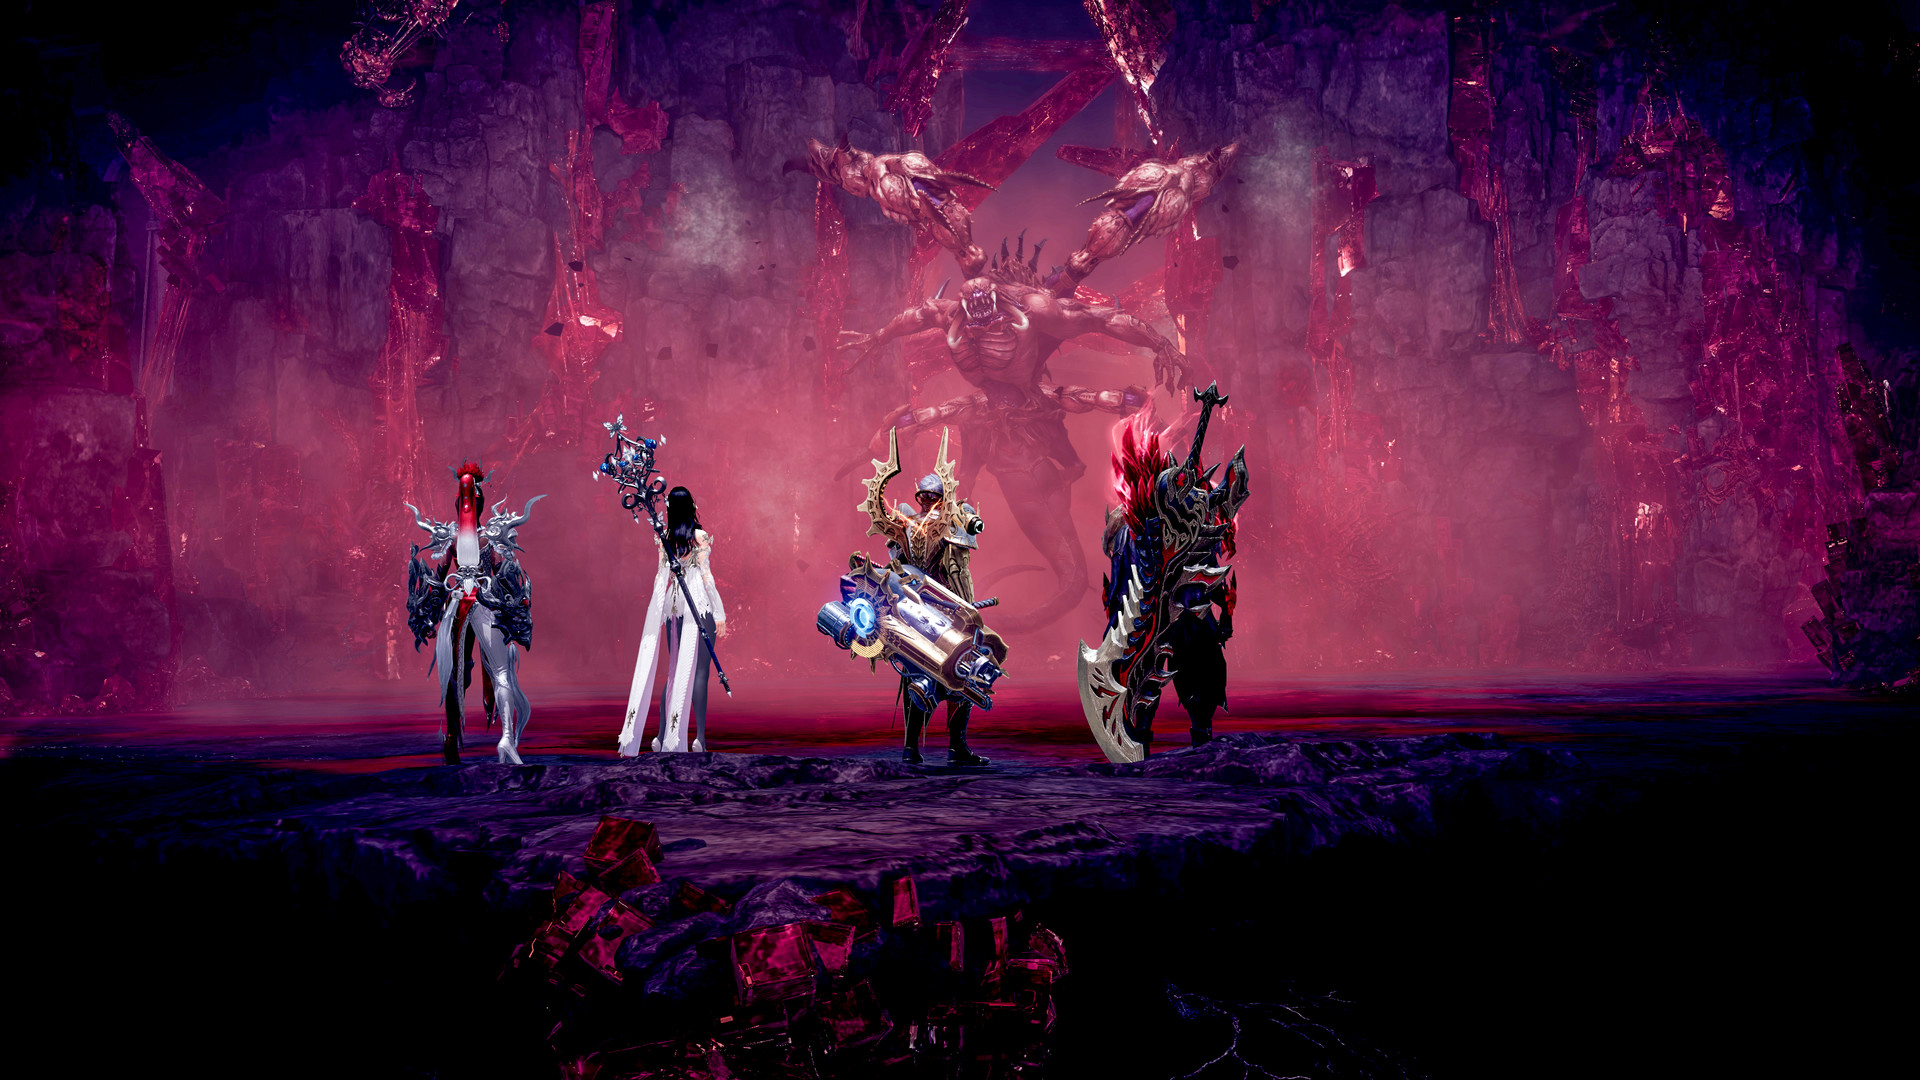 Jocuri precum Diablo: Patru eroi se pregătesc să se confrunte cu un monstru în Ark Lost